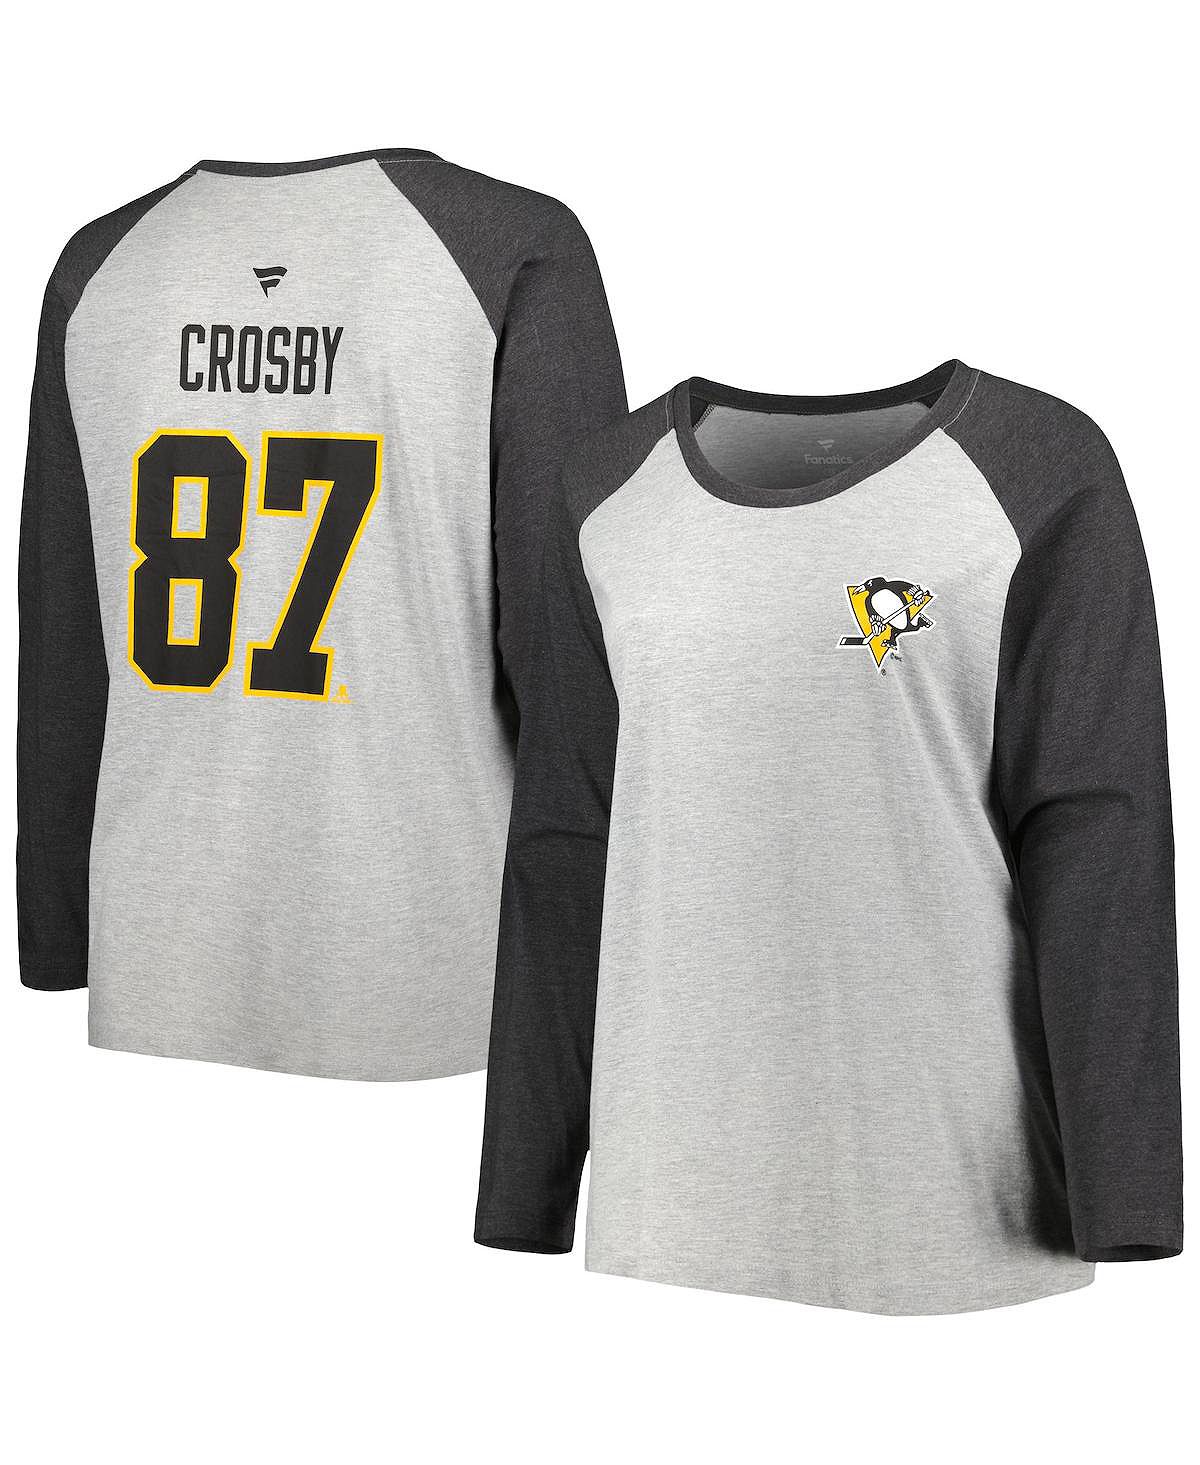 Женская фирменная футболка Sidney Crosby Heather Grey, Heather Charcoal Pittsburgh Penguins размера плюс с именем и номером, футболка реглан с длинными рукавами Fanatics